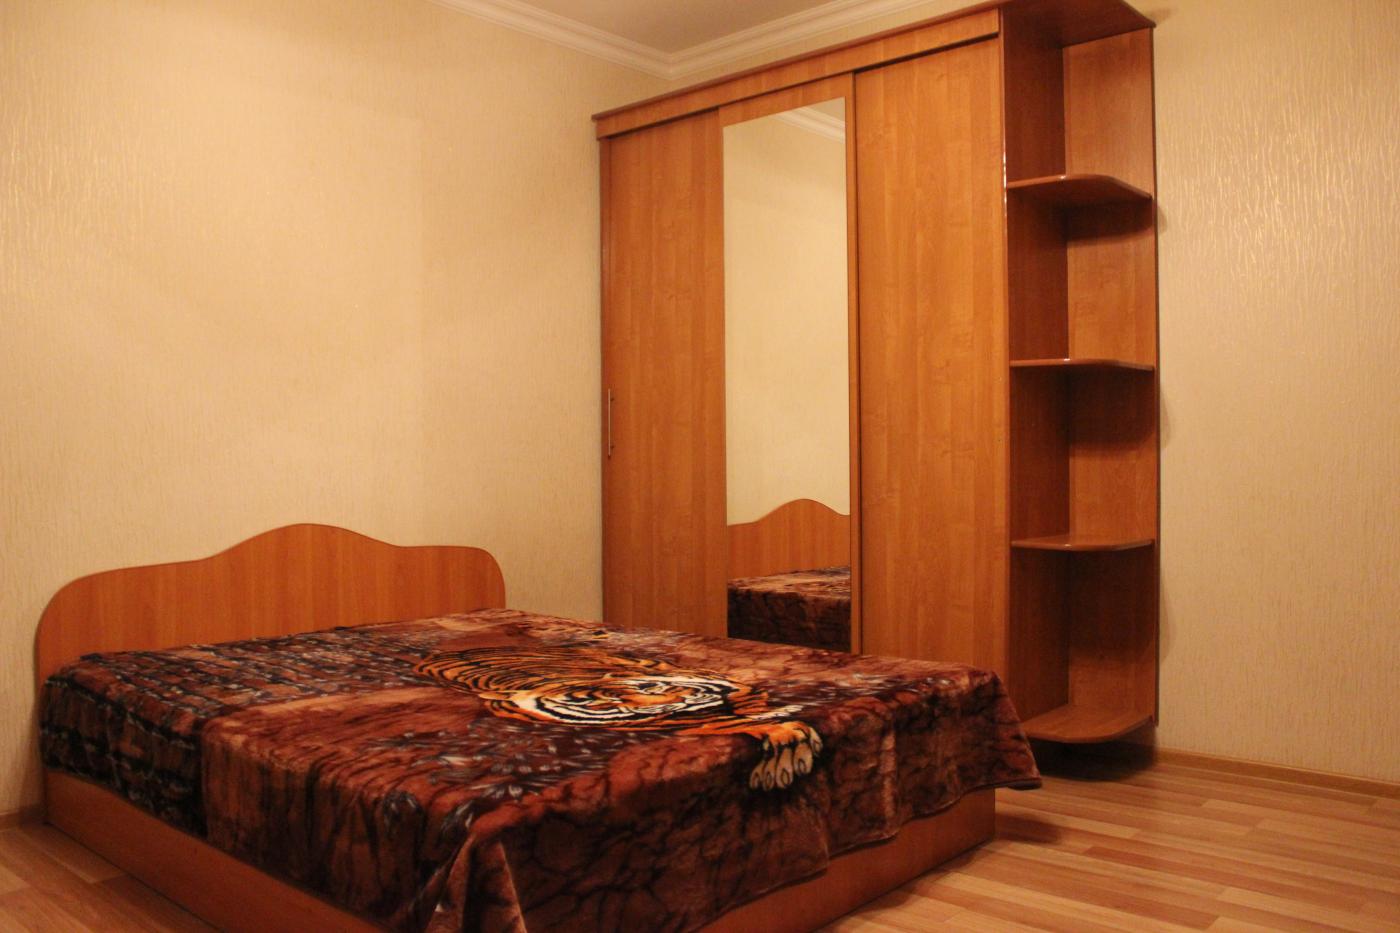 1-комнатная квартира посуточно (вариант № 4362), ул. Чистопольская улица, фото № 3